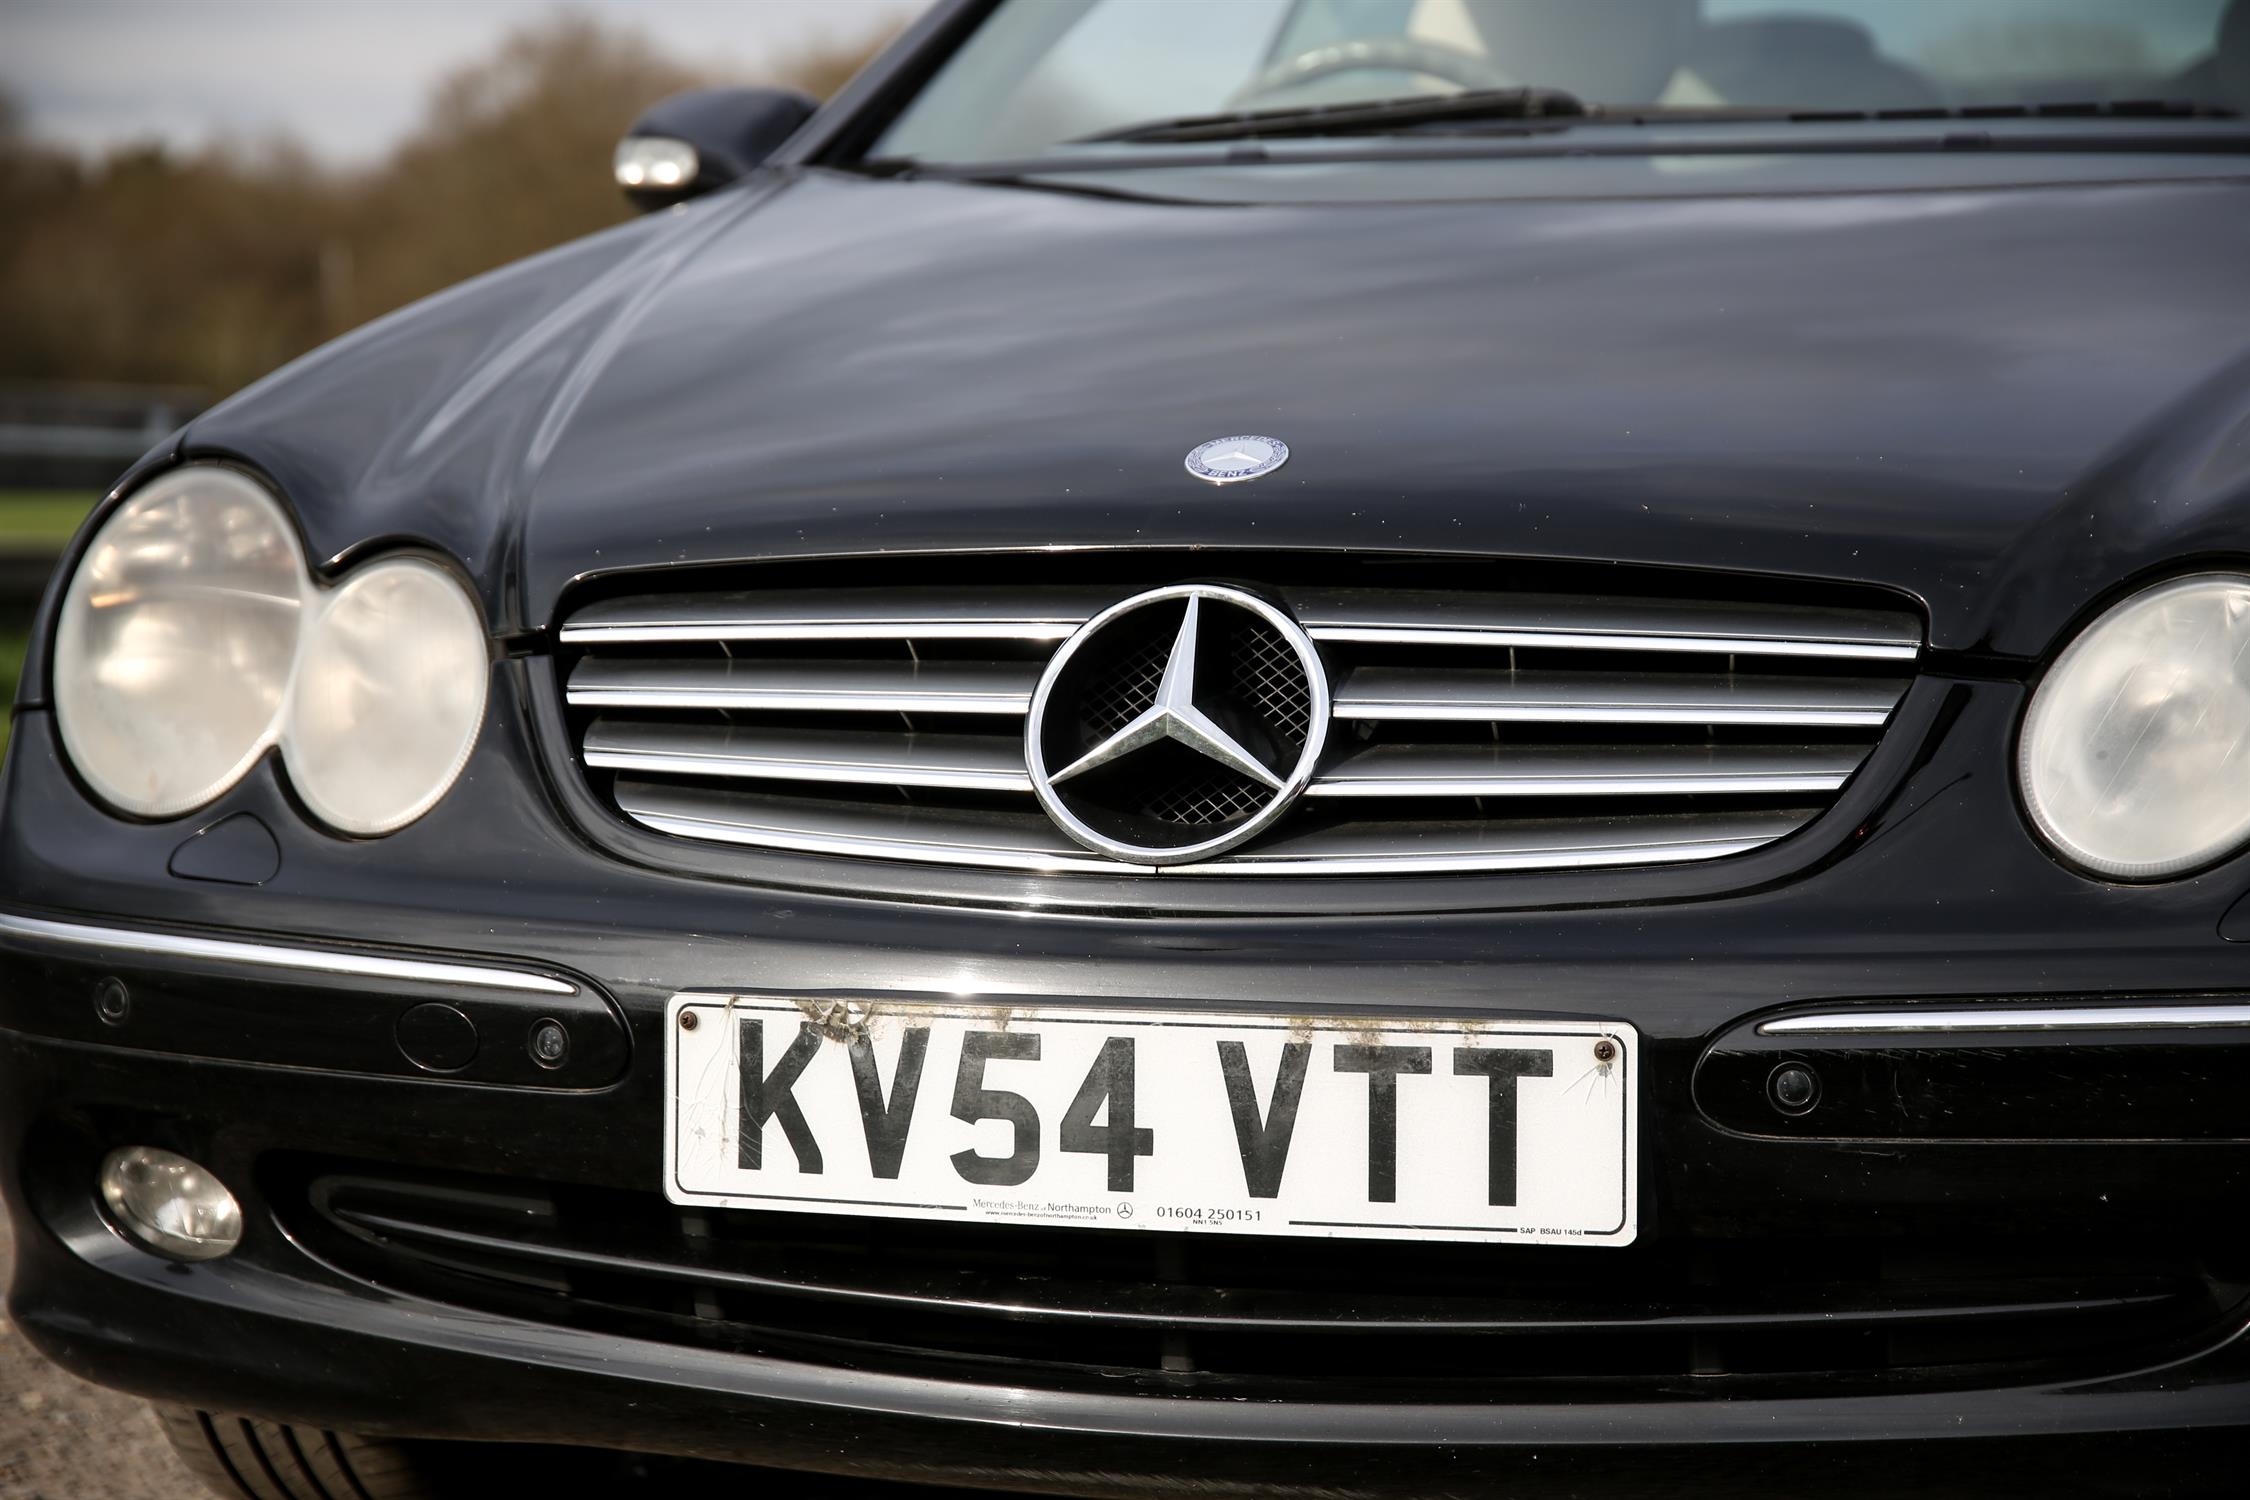 Mercedes CLK 200 Elegance Kompressor convertible in black. Registration number KV54 VTT. - Image 4 of 19